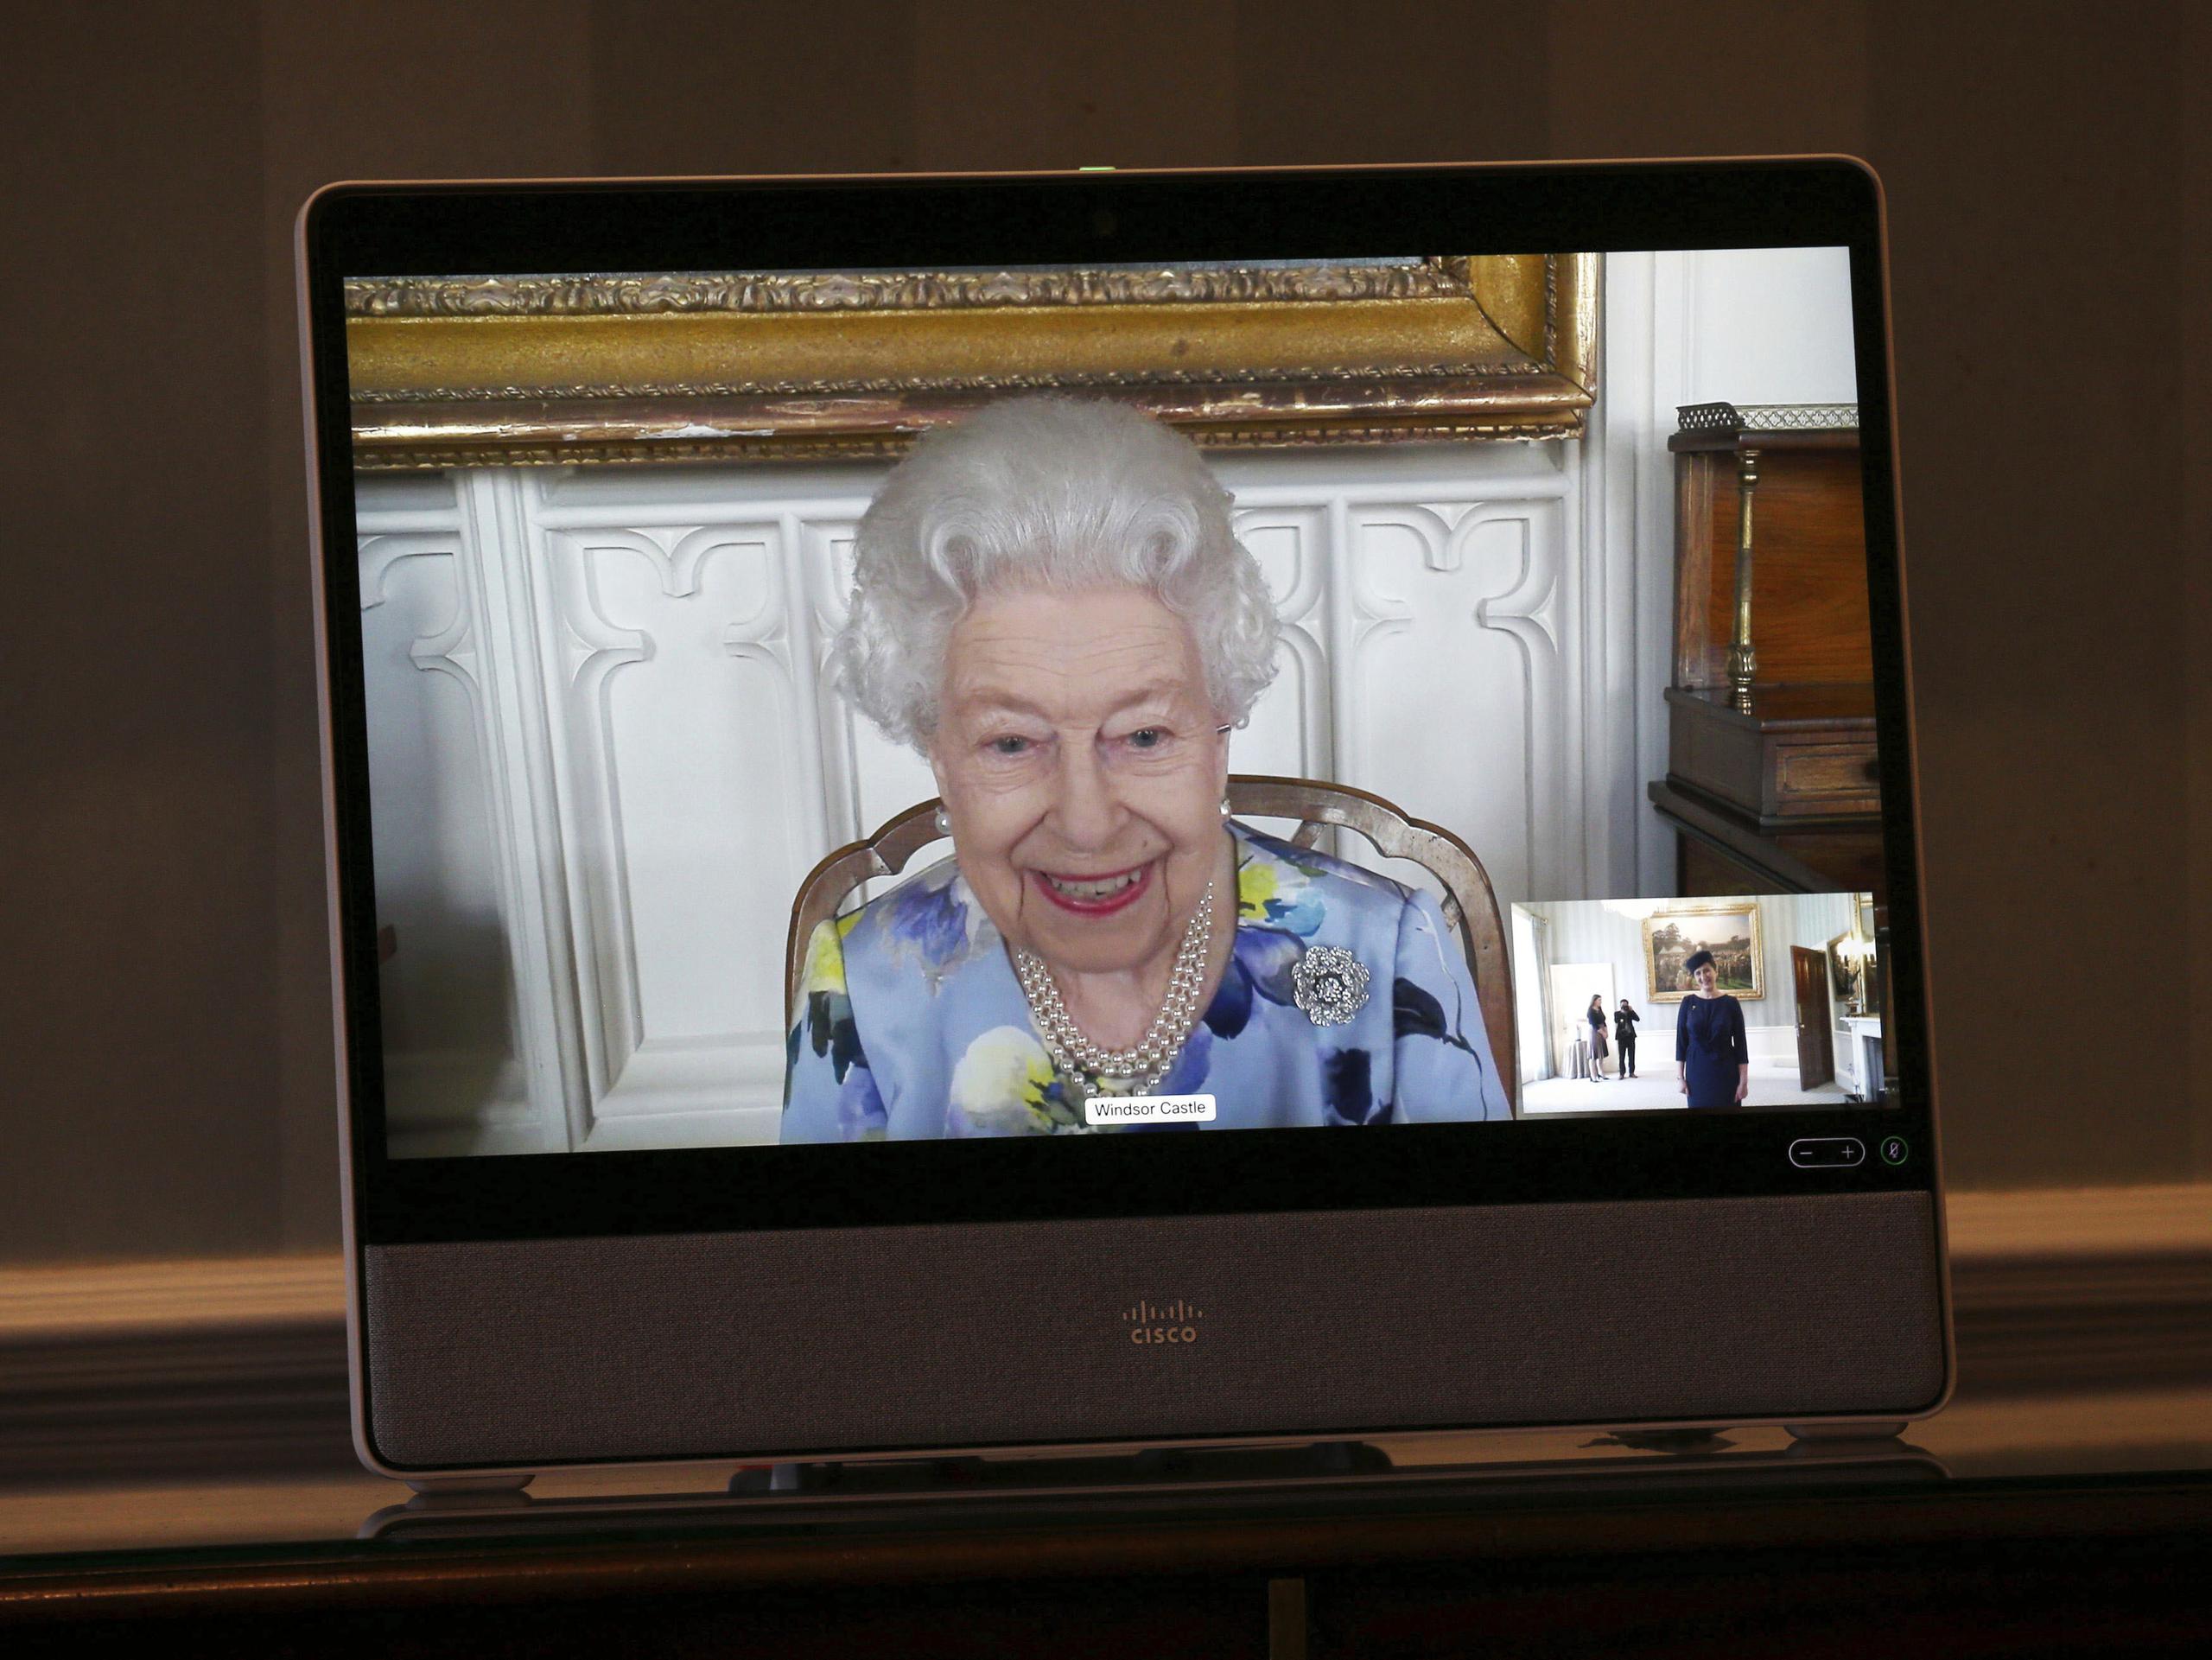 La reina Isabel II de Gran Bretaña en una pantalla durante una videollamada desde el Castillo de Windsor, donde está residiendo, en una audiencia virtual para recibir a su excelencia Ivita Burmistre, embajadora de Letonia, en el Palacio de Buckingham.